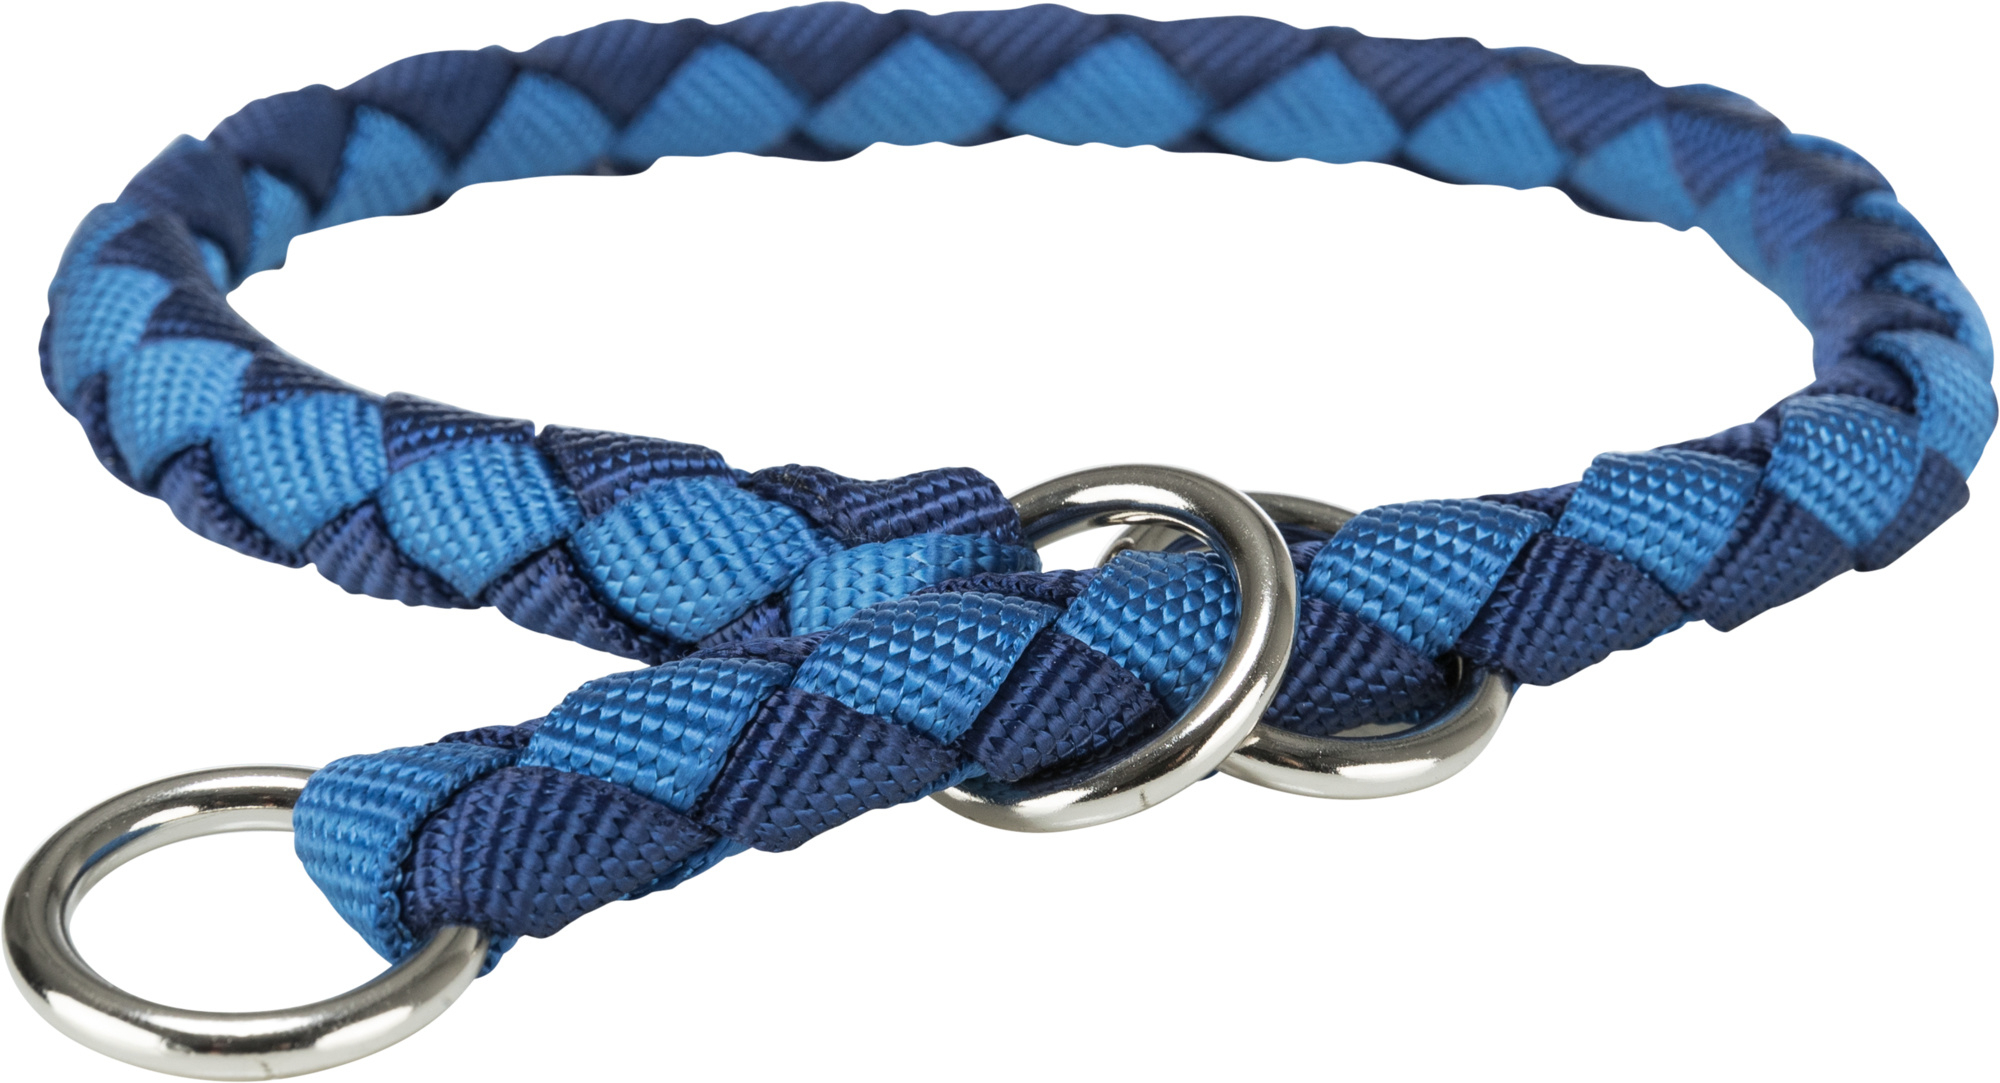 Coleira Cavo Semi-estrangulador indigo/azul - vários tamanhos disponíveis